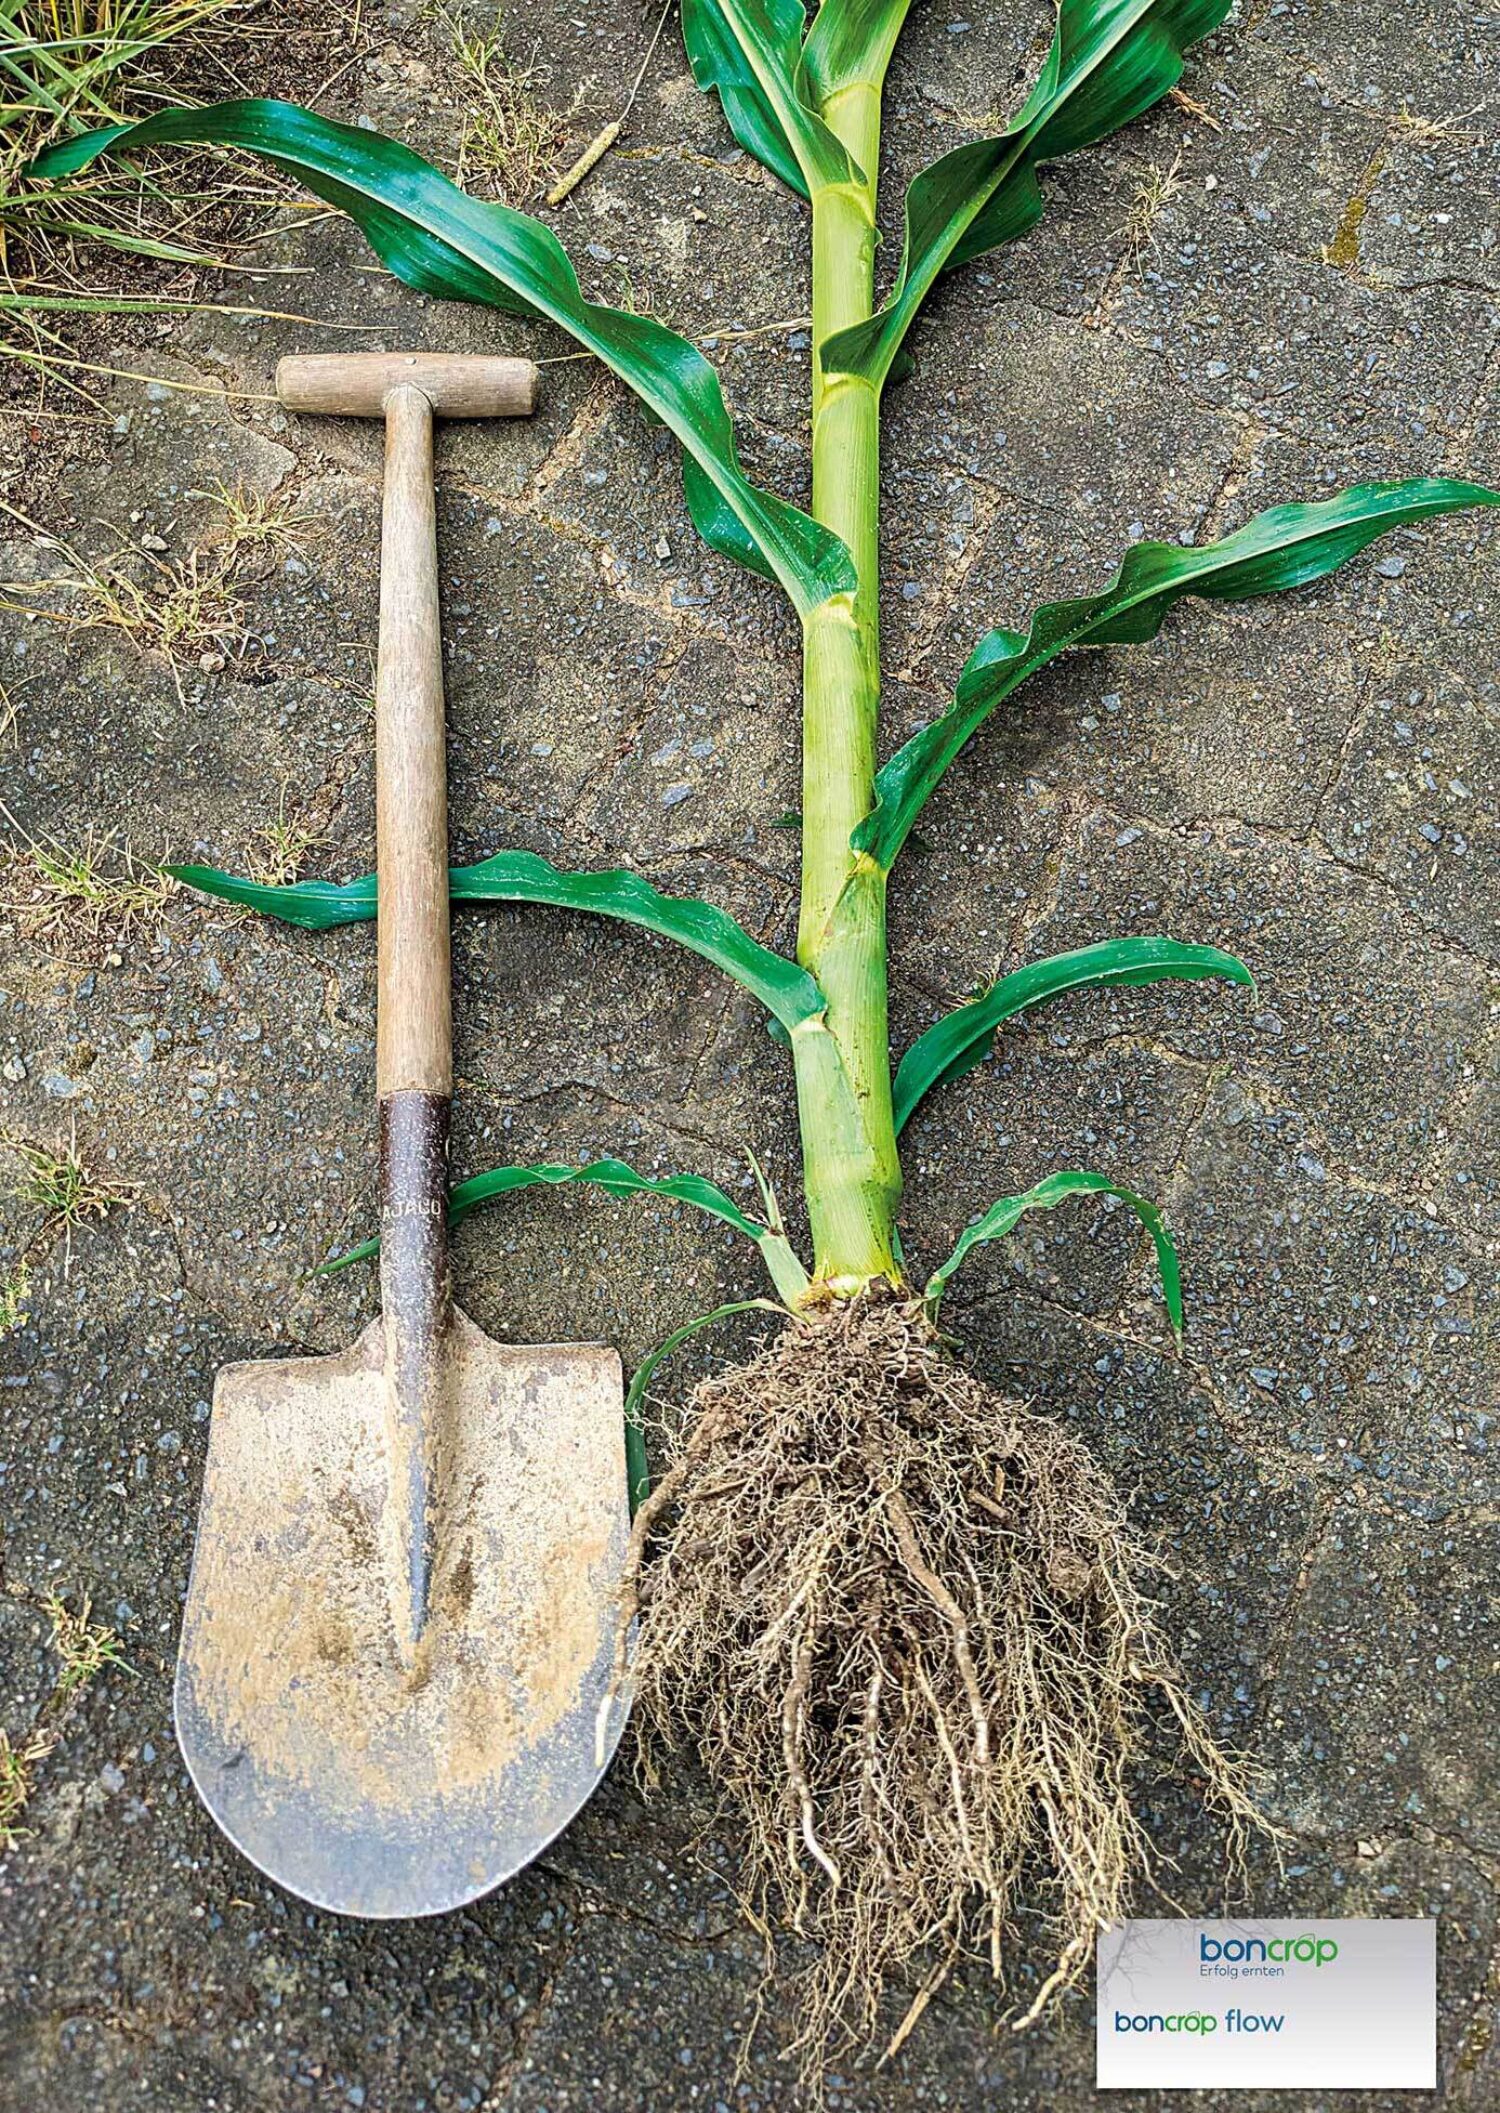 Impression aus den boncrop flow Praxisdemos 2023 - Maispflanze und Spaten